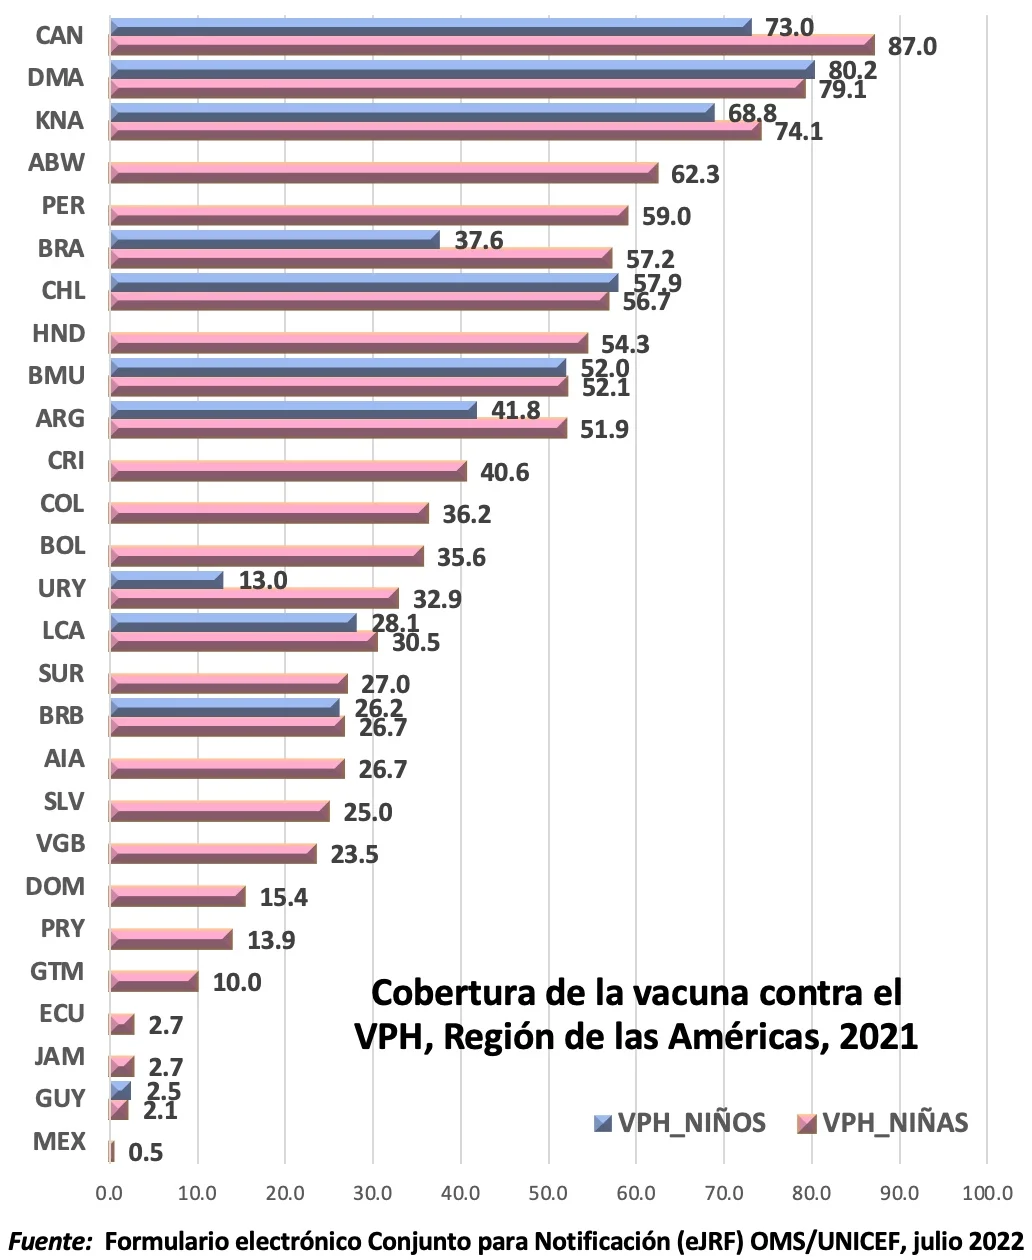 México es el país que menos invierte en combatir el VPH en la región portada